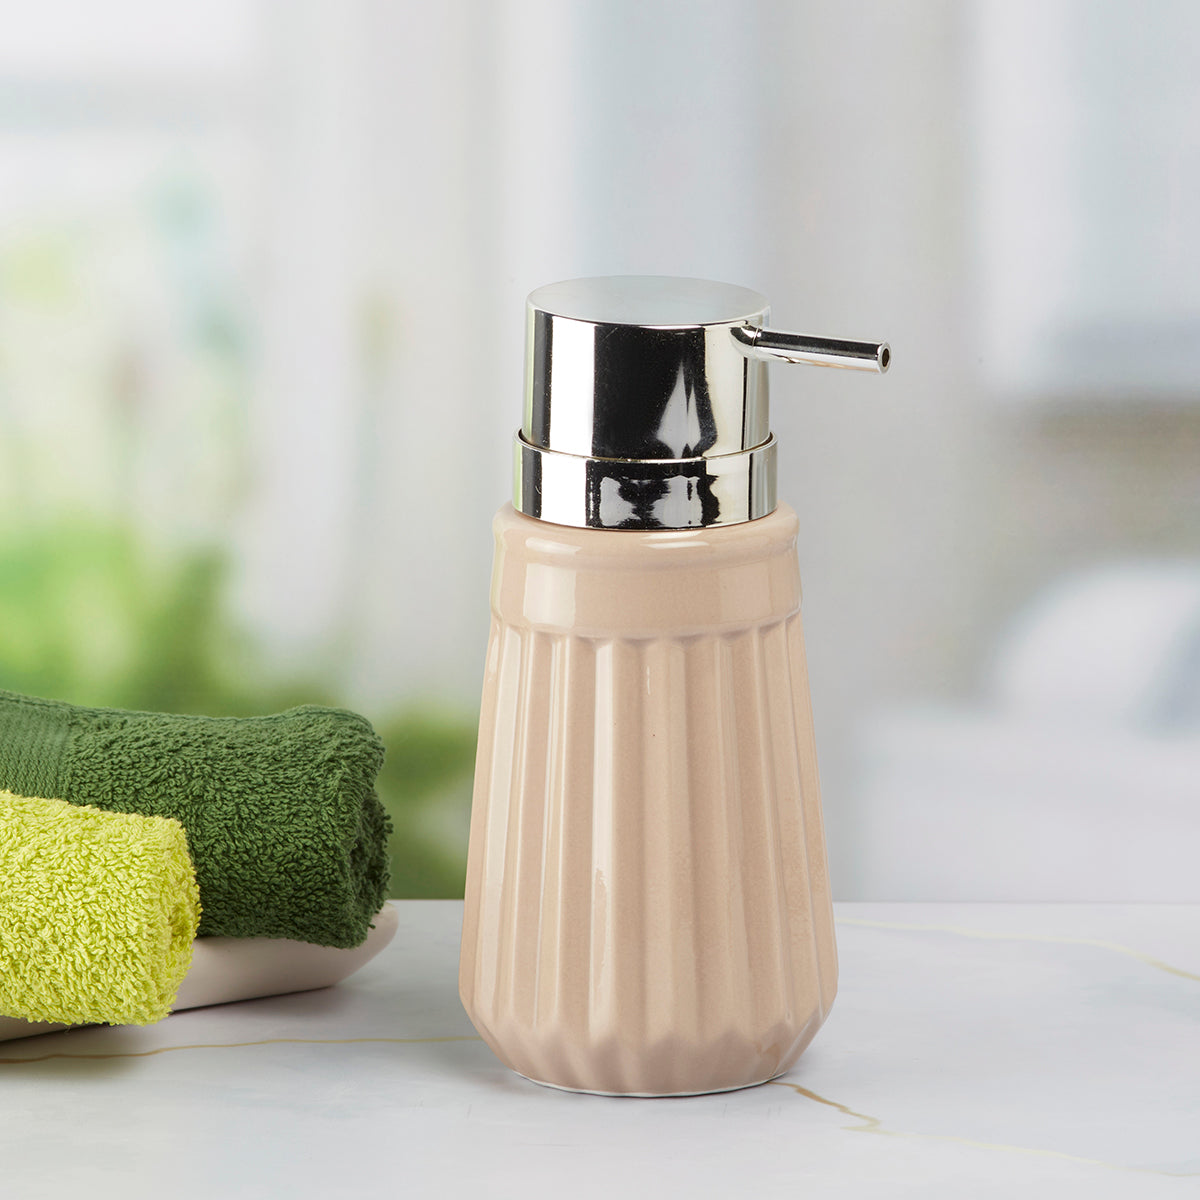 Kookee Ceramic Soap Dispenser for Bathroom handwash, refillable pump bottle for Kitchen hand wash basin, Set of 1, Beige (6035)